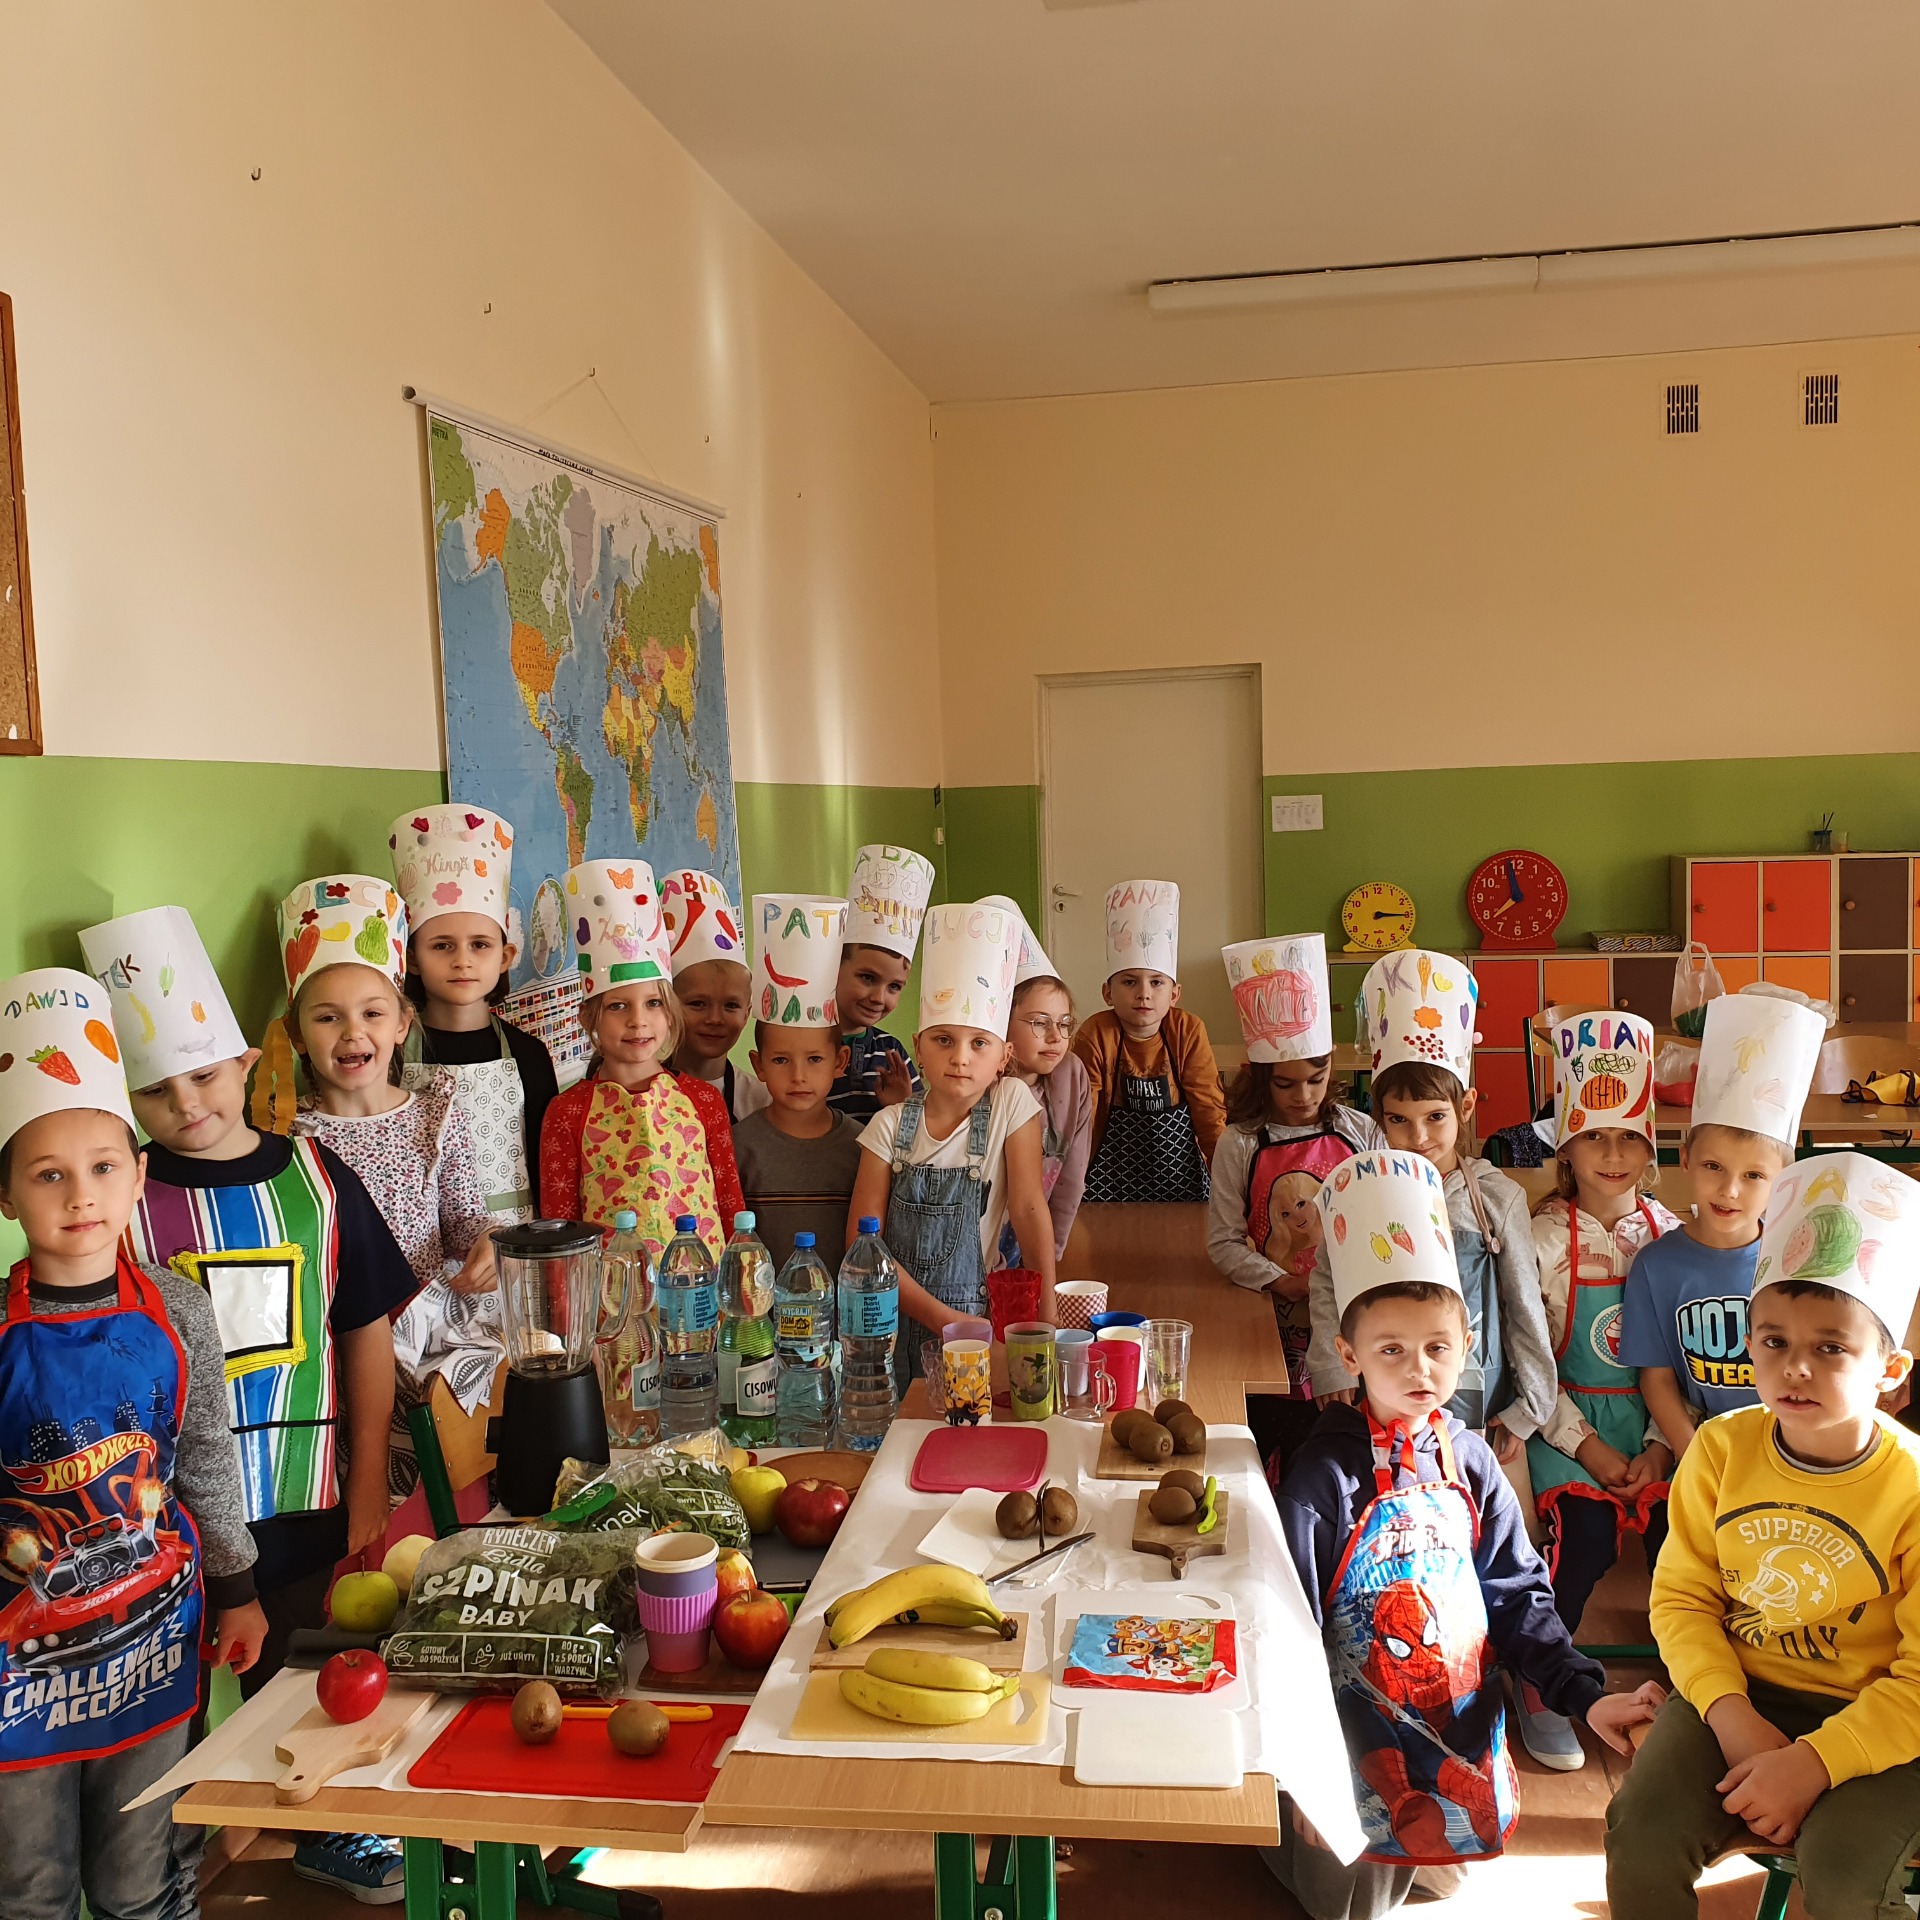 Owoce i warzywa w szkole — promowanie wśród dzieci zdrowych nawyków żywieniowych. - Obrazek 1